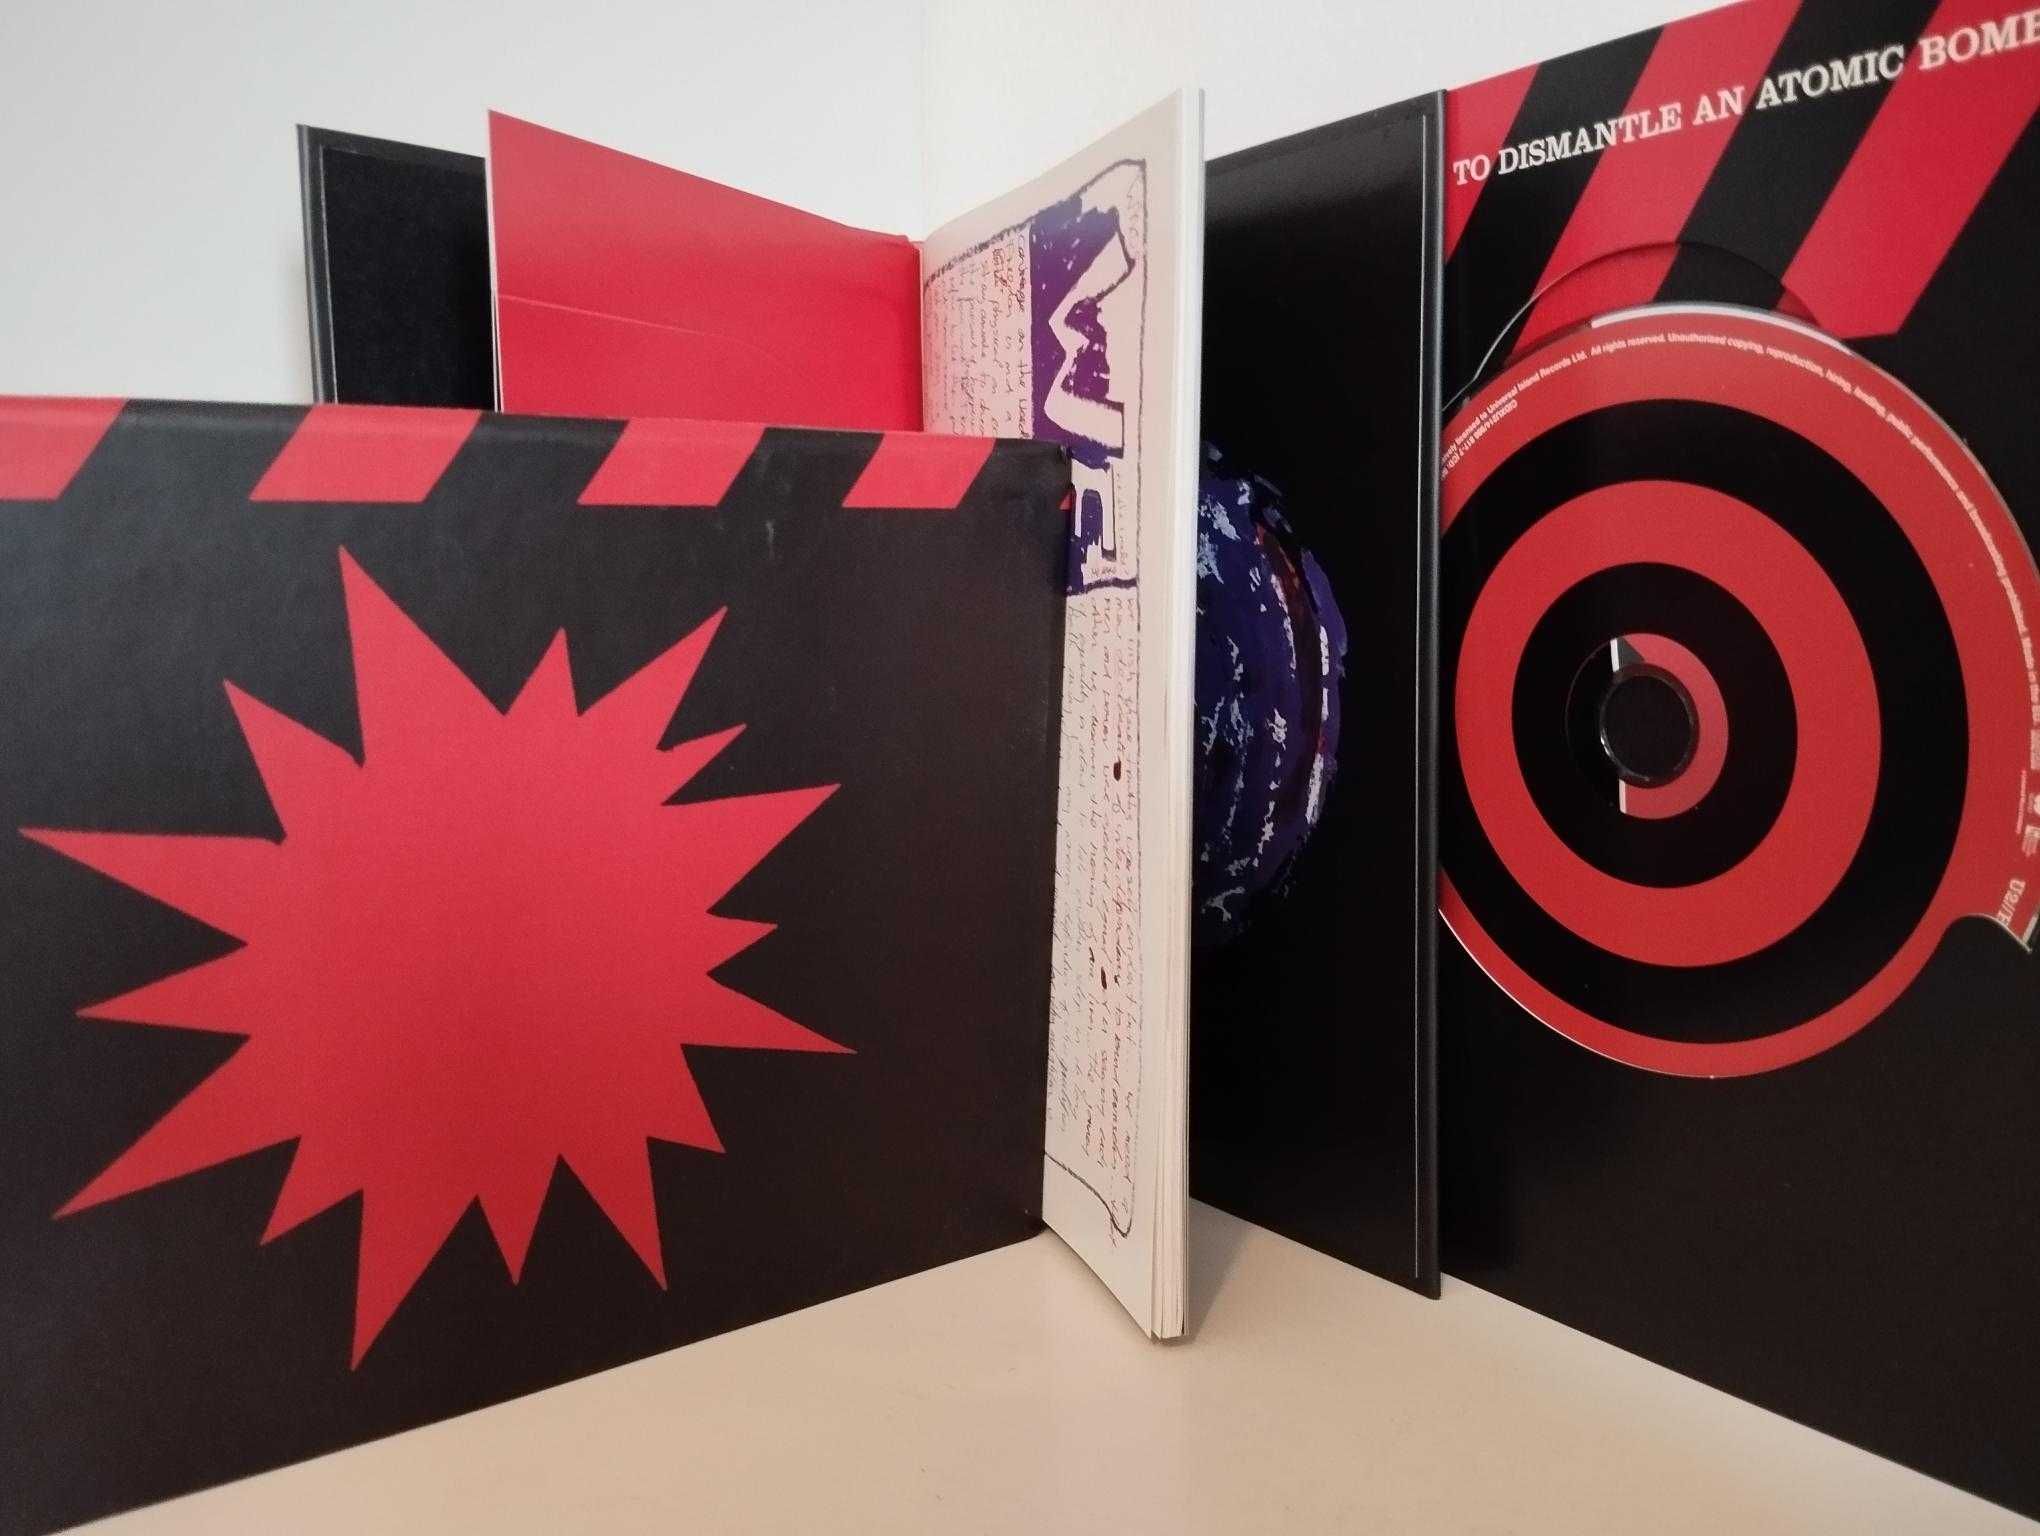 U2 - How to Dismantle an Atomic Bomb - CD/DVD - edição de luxo